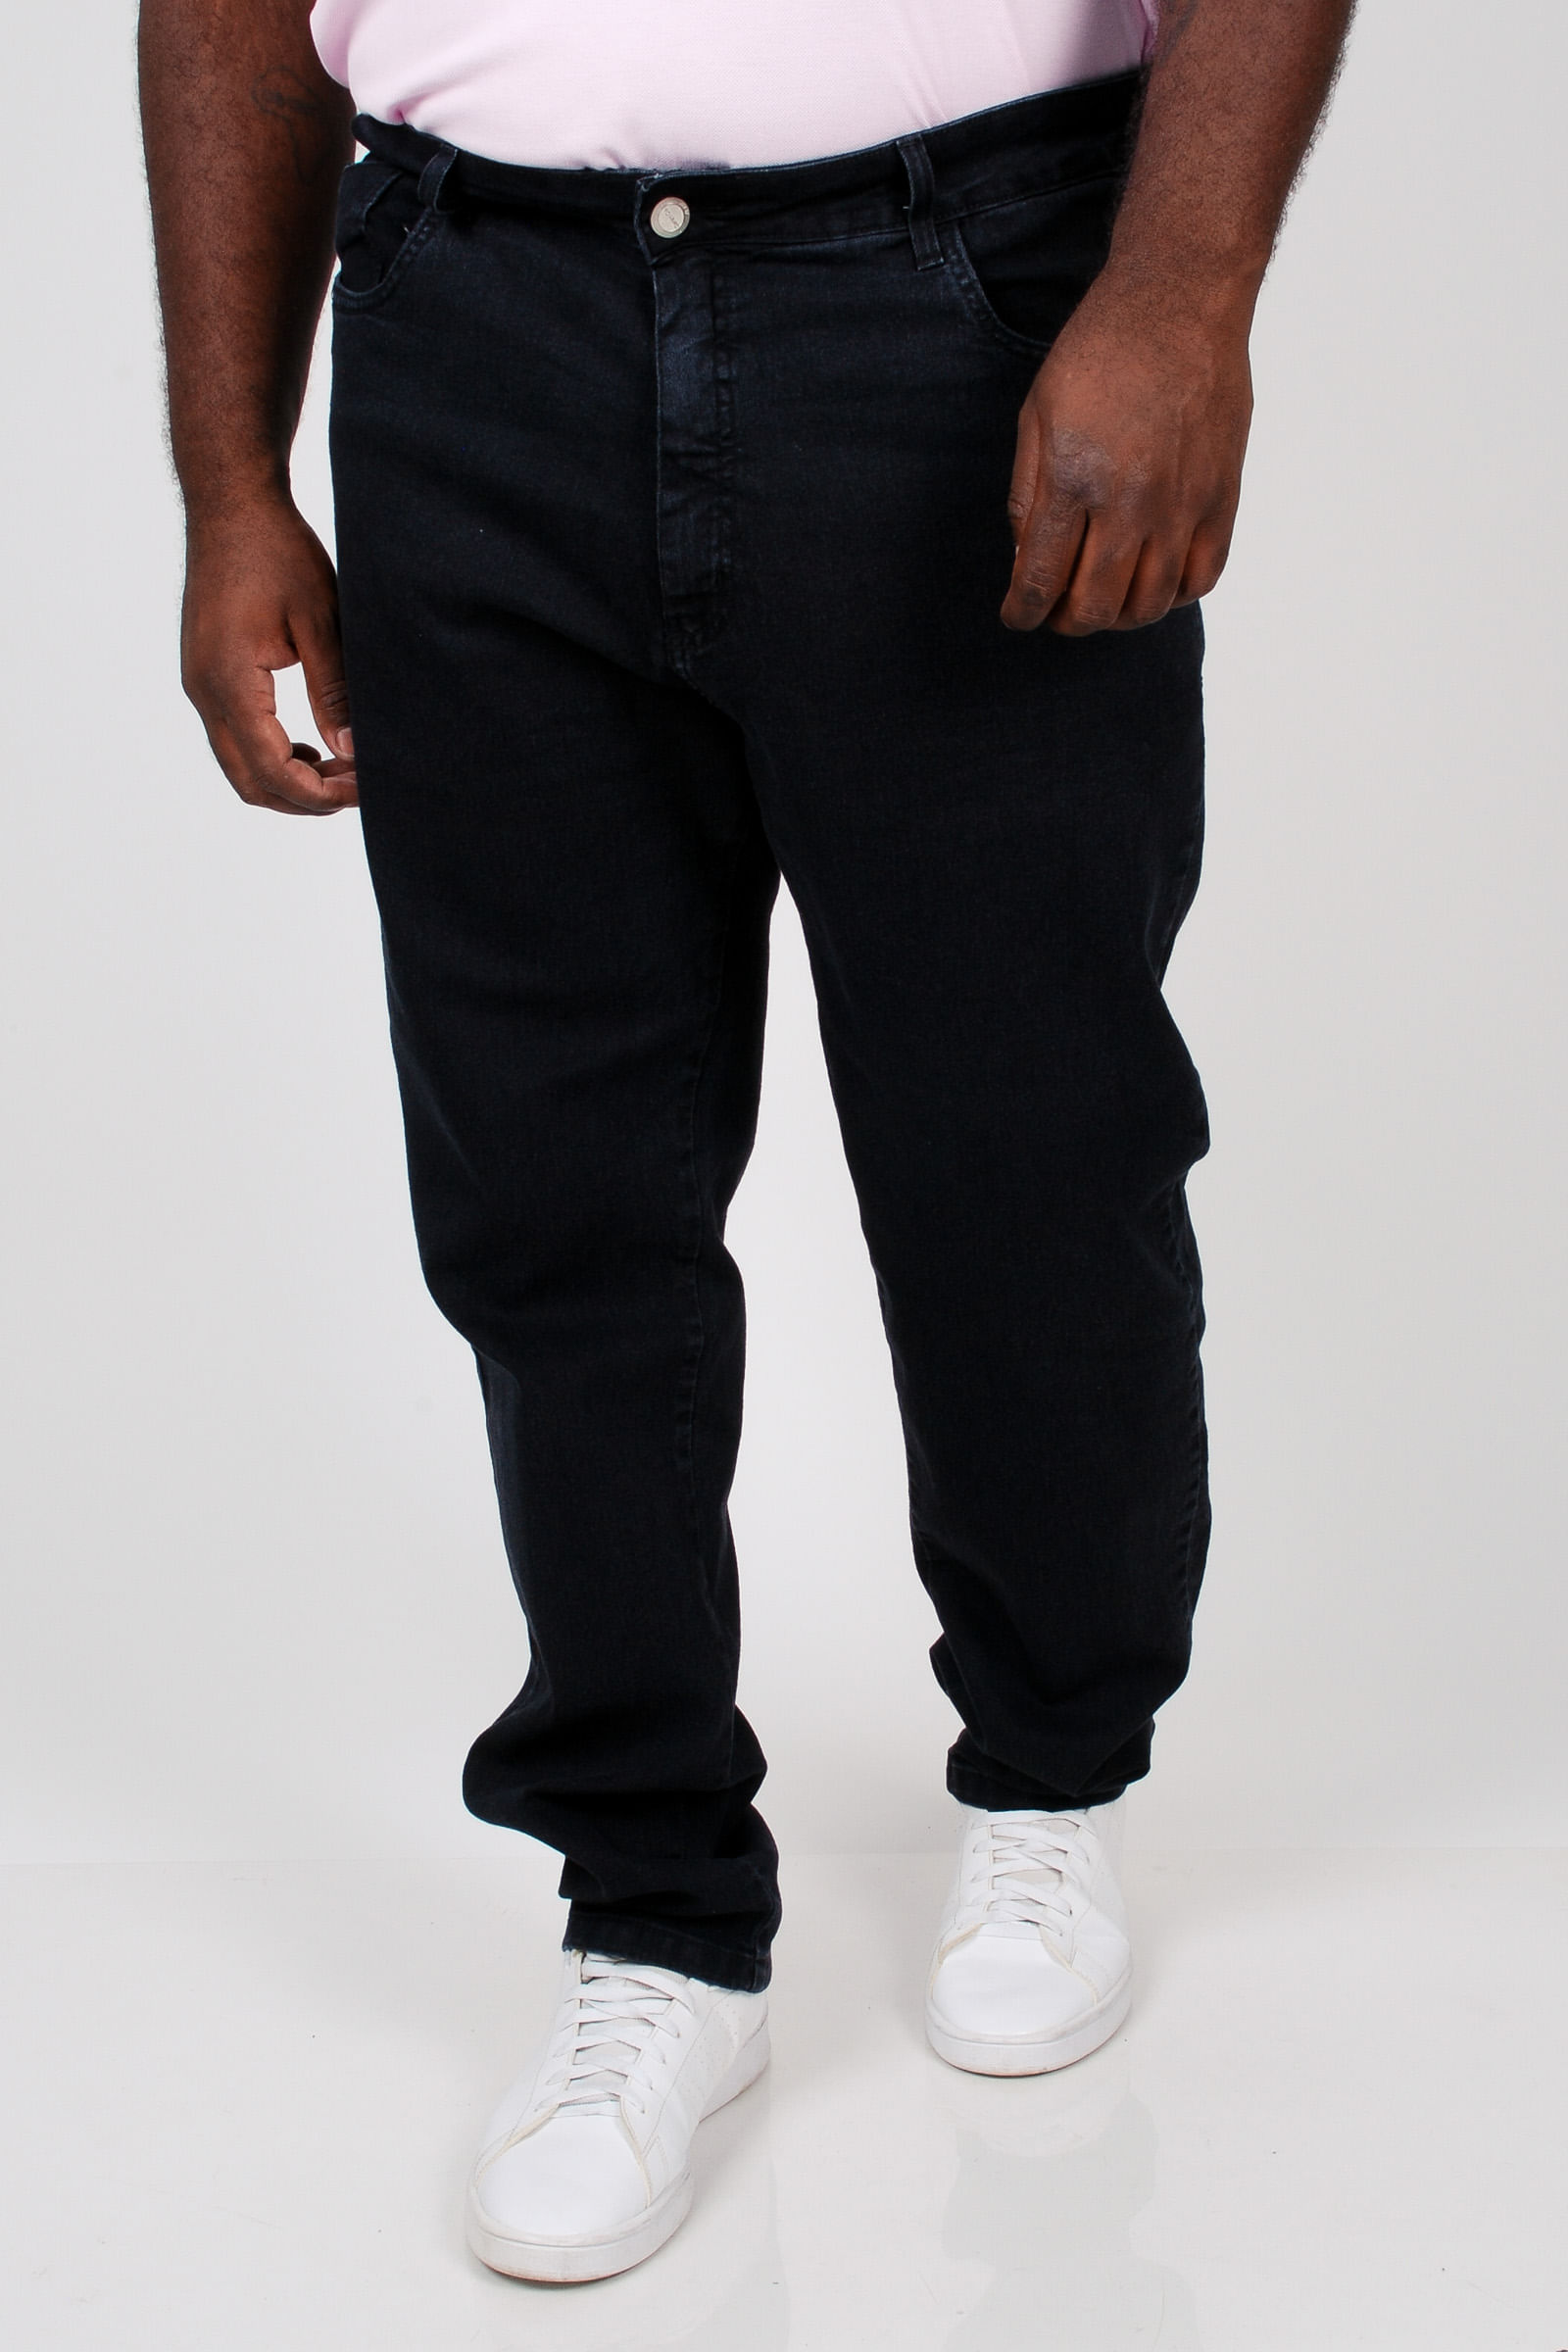 Calca-skinny-black-jeans-plus-size_0103_1